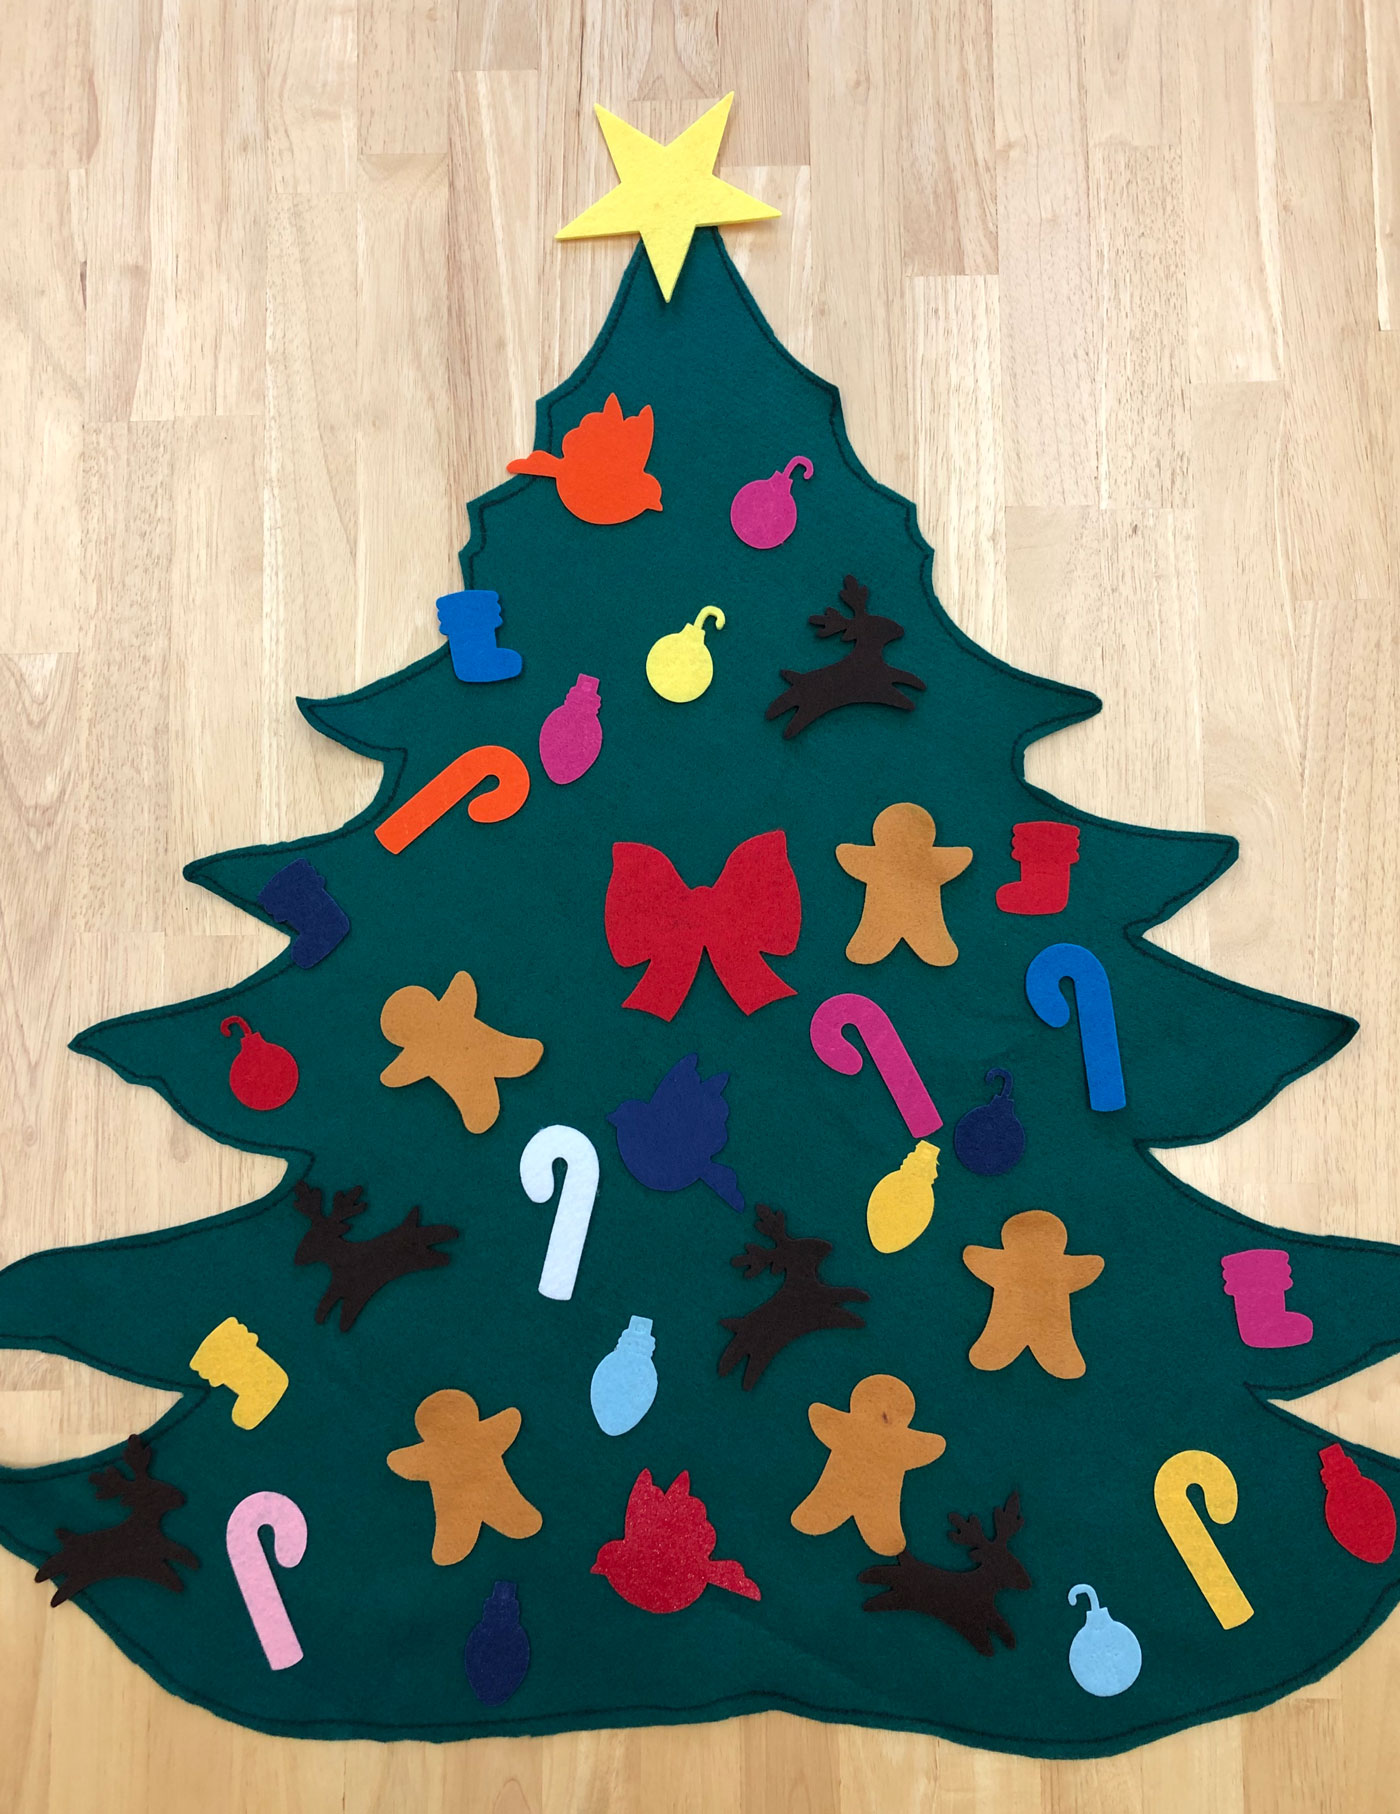 IImagine.Create.Play Resource Kit - Felt Christmas Tree